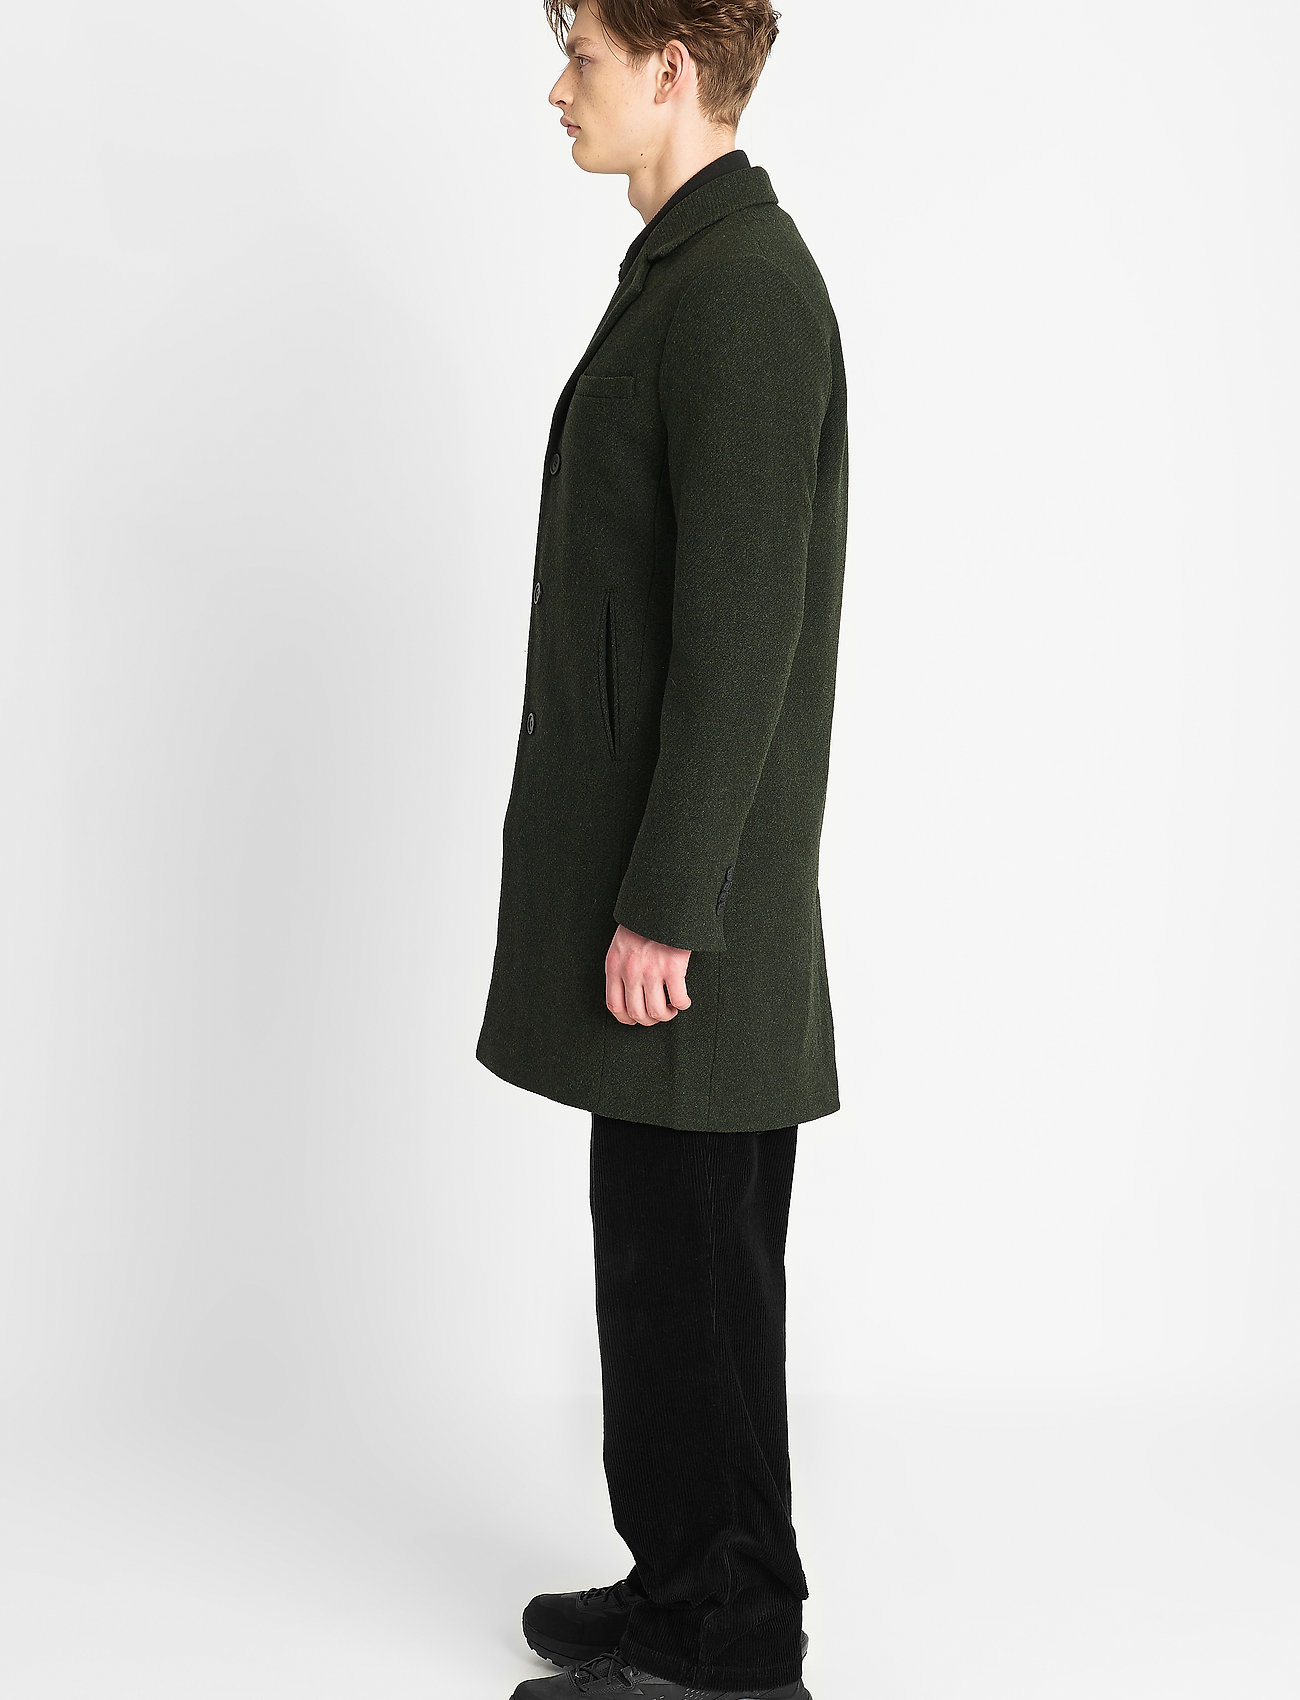 Brixtol Textiles - Ian - manteaux de laine - olive - 4